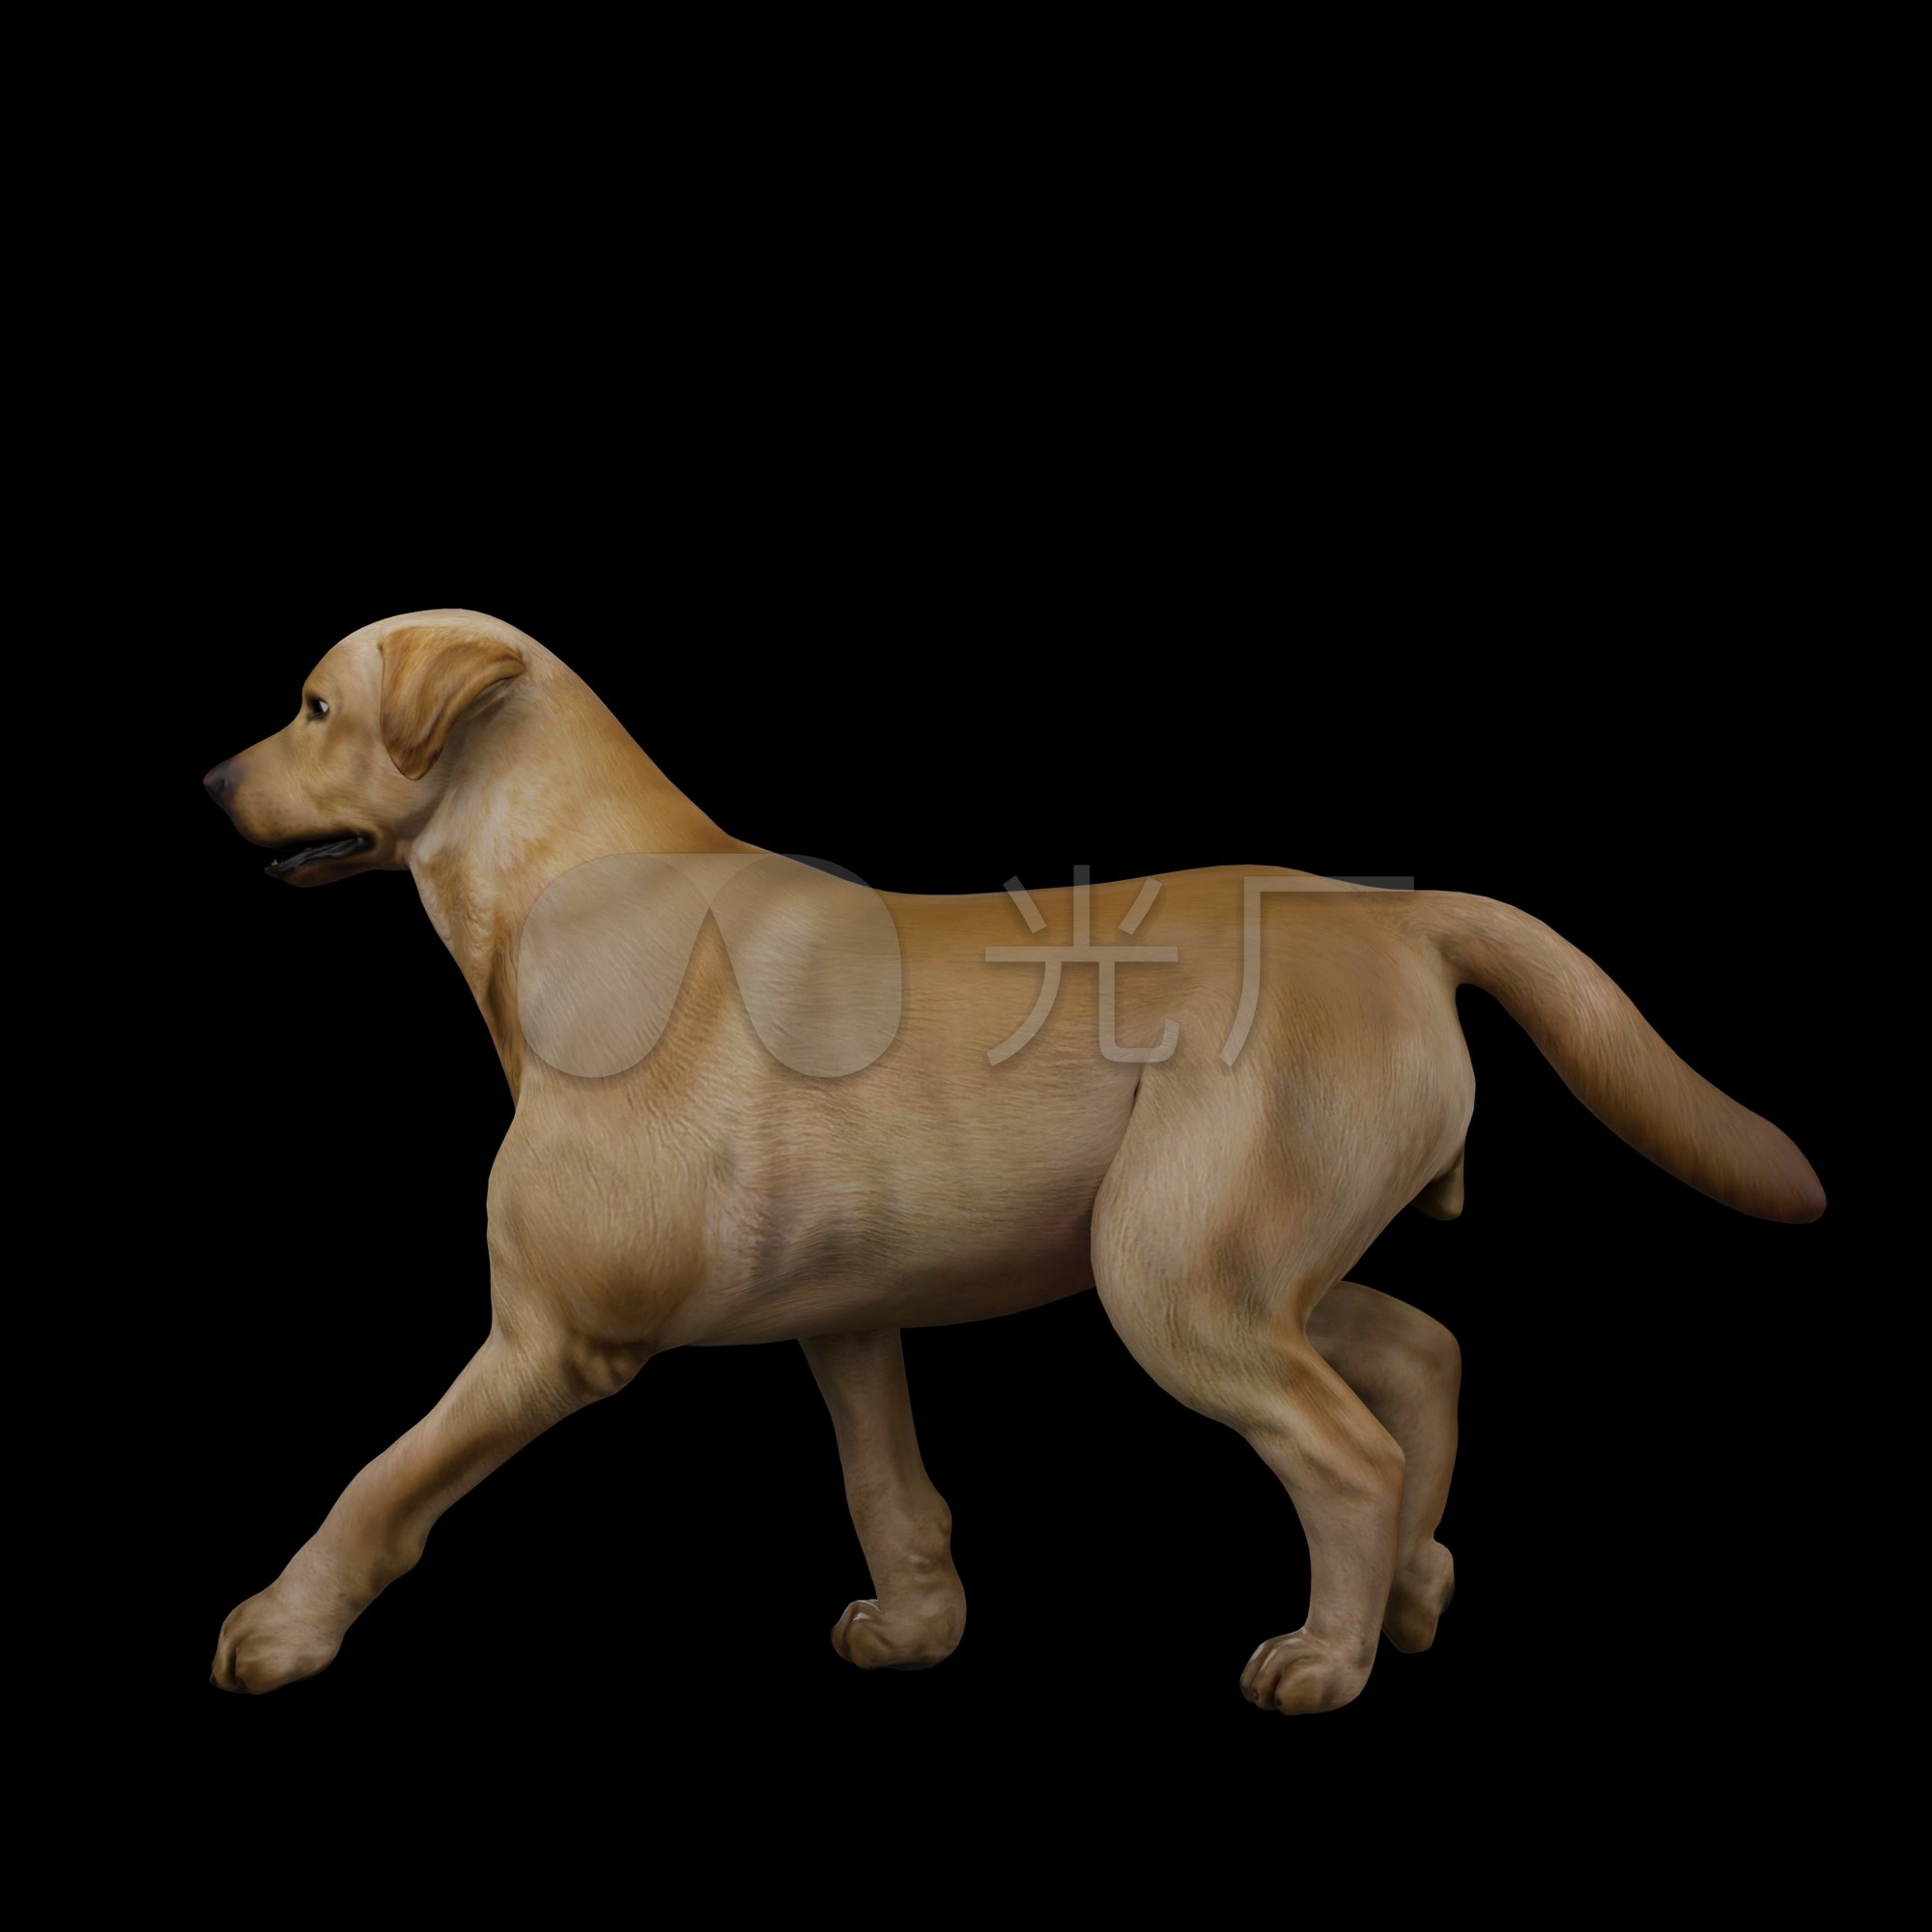 Shiba Inu Hd Transparent, A Running Cute Shiba Inu, Shiba, Pet, Dog PNG Image For Free Download